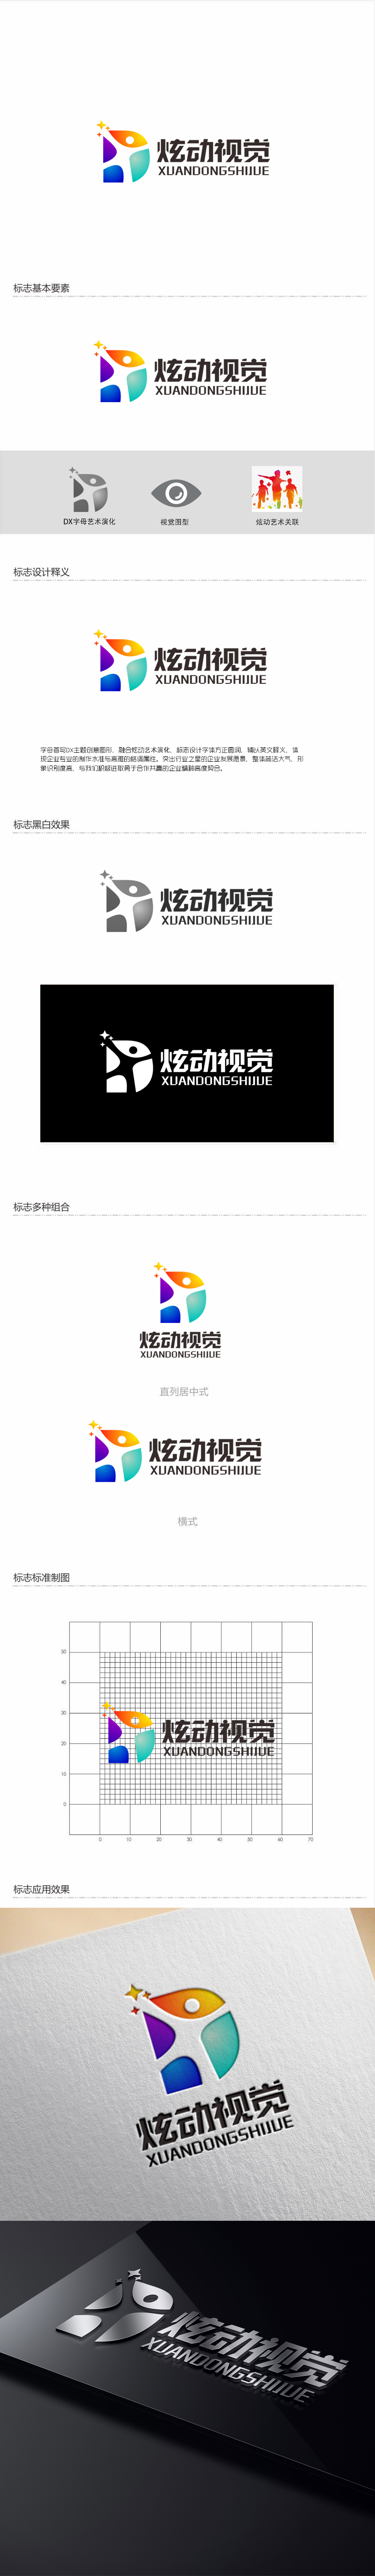 郭庆忠的炫动视觉logo设计